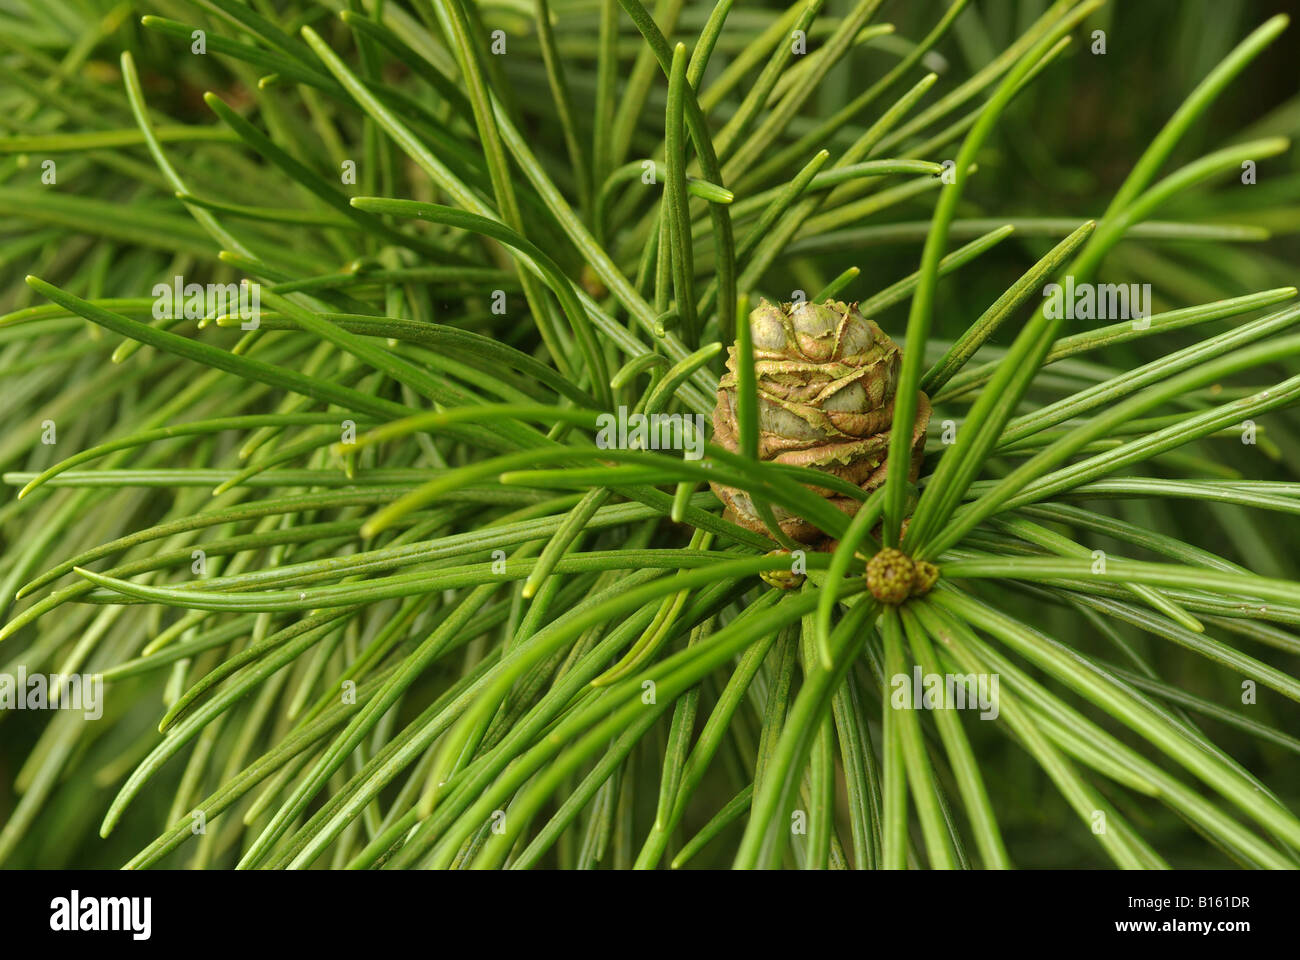 The umbrella pine, (Sciadopitys verticillata) Stock Photo